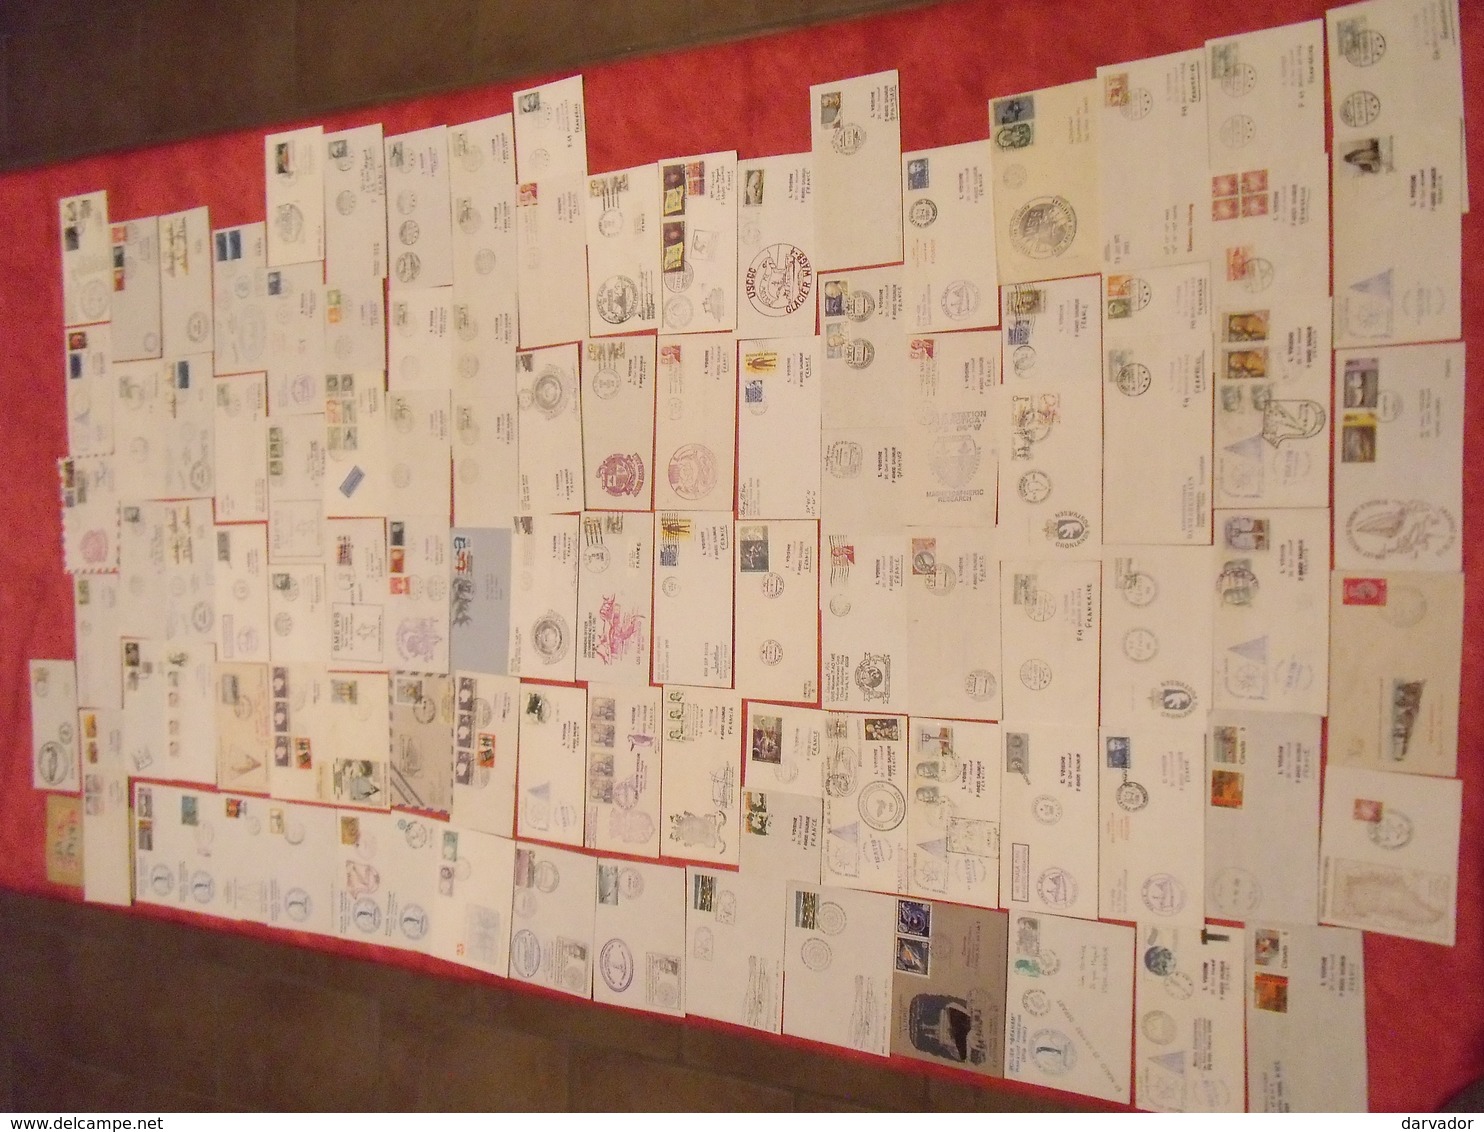 TC19 / RARE collection de 235 enveloppes oblitérées ayant voyagées thème polaire divers monde ( nombreuses thématiques )